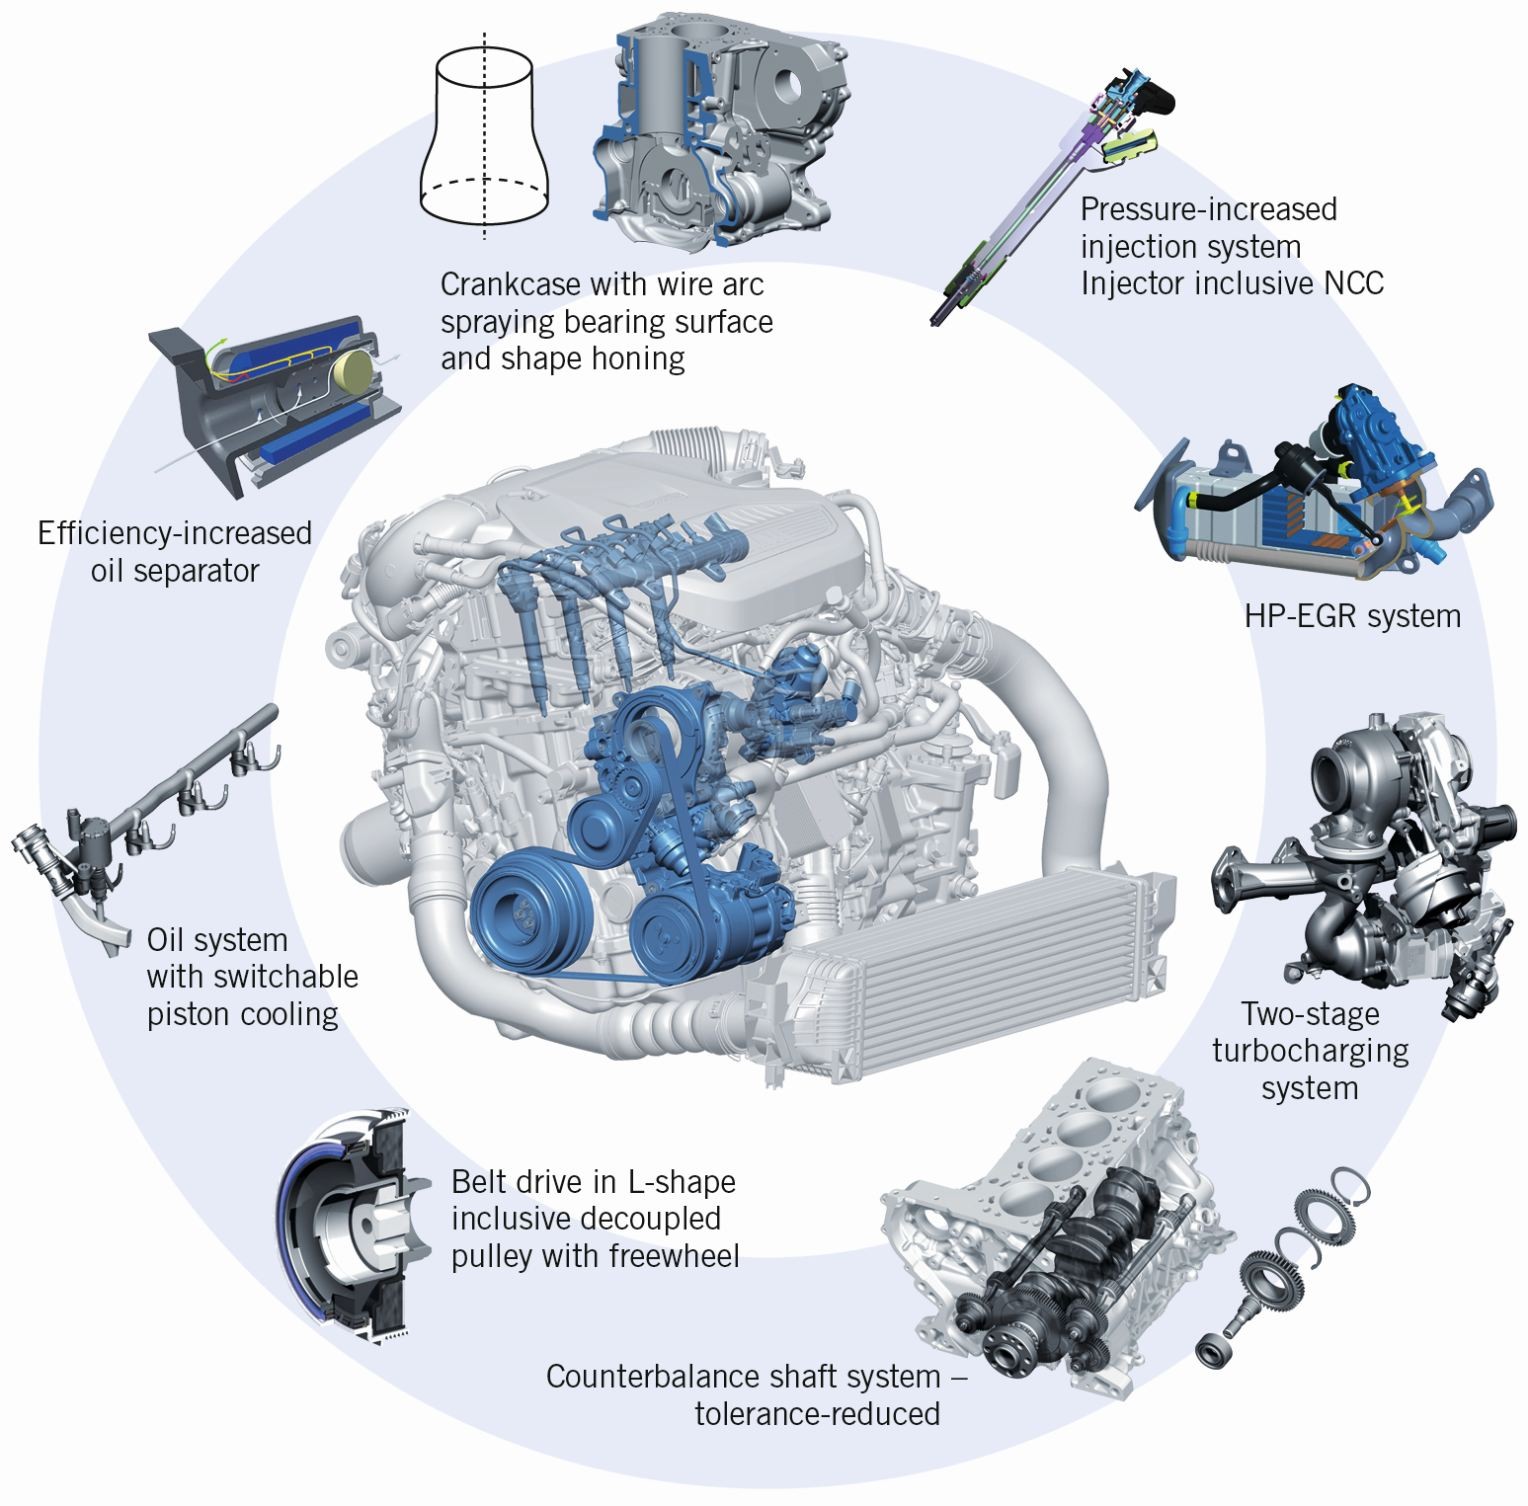 7 3 Diesel Engine Diagram 2 the Next Generation Diesel Engine Family From Bmw Of 7 3 Diesel Engine Diagram 2